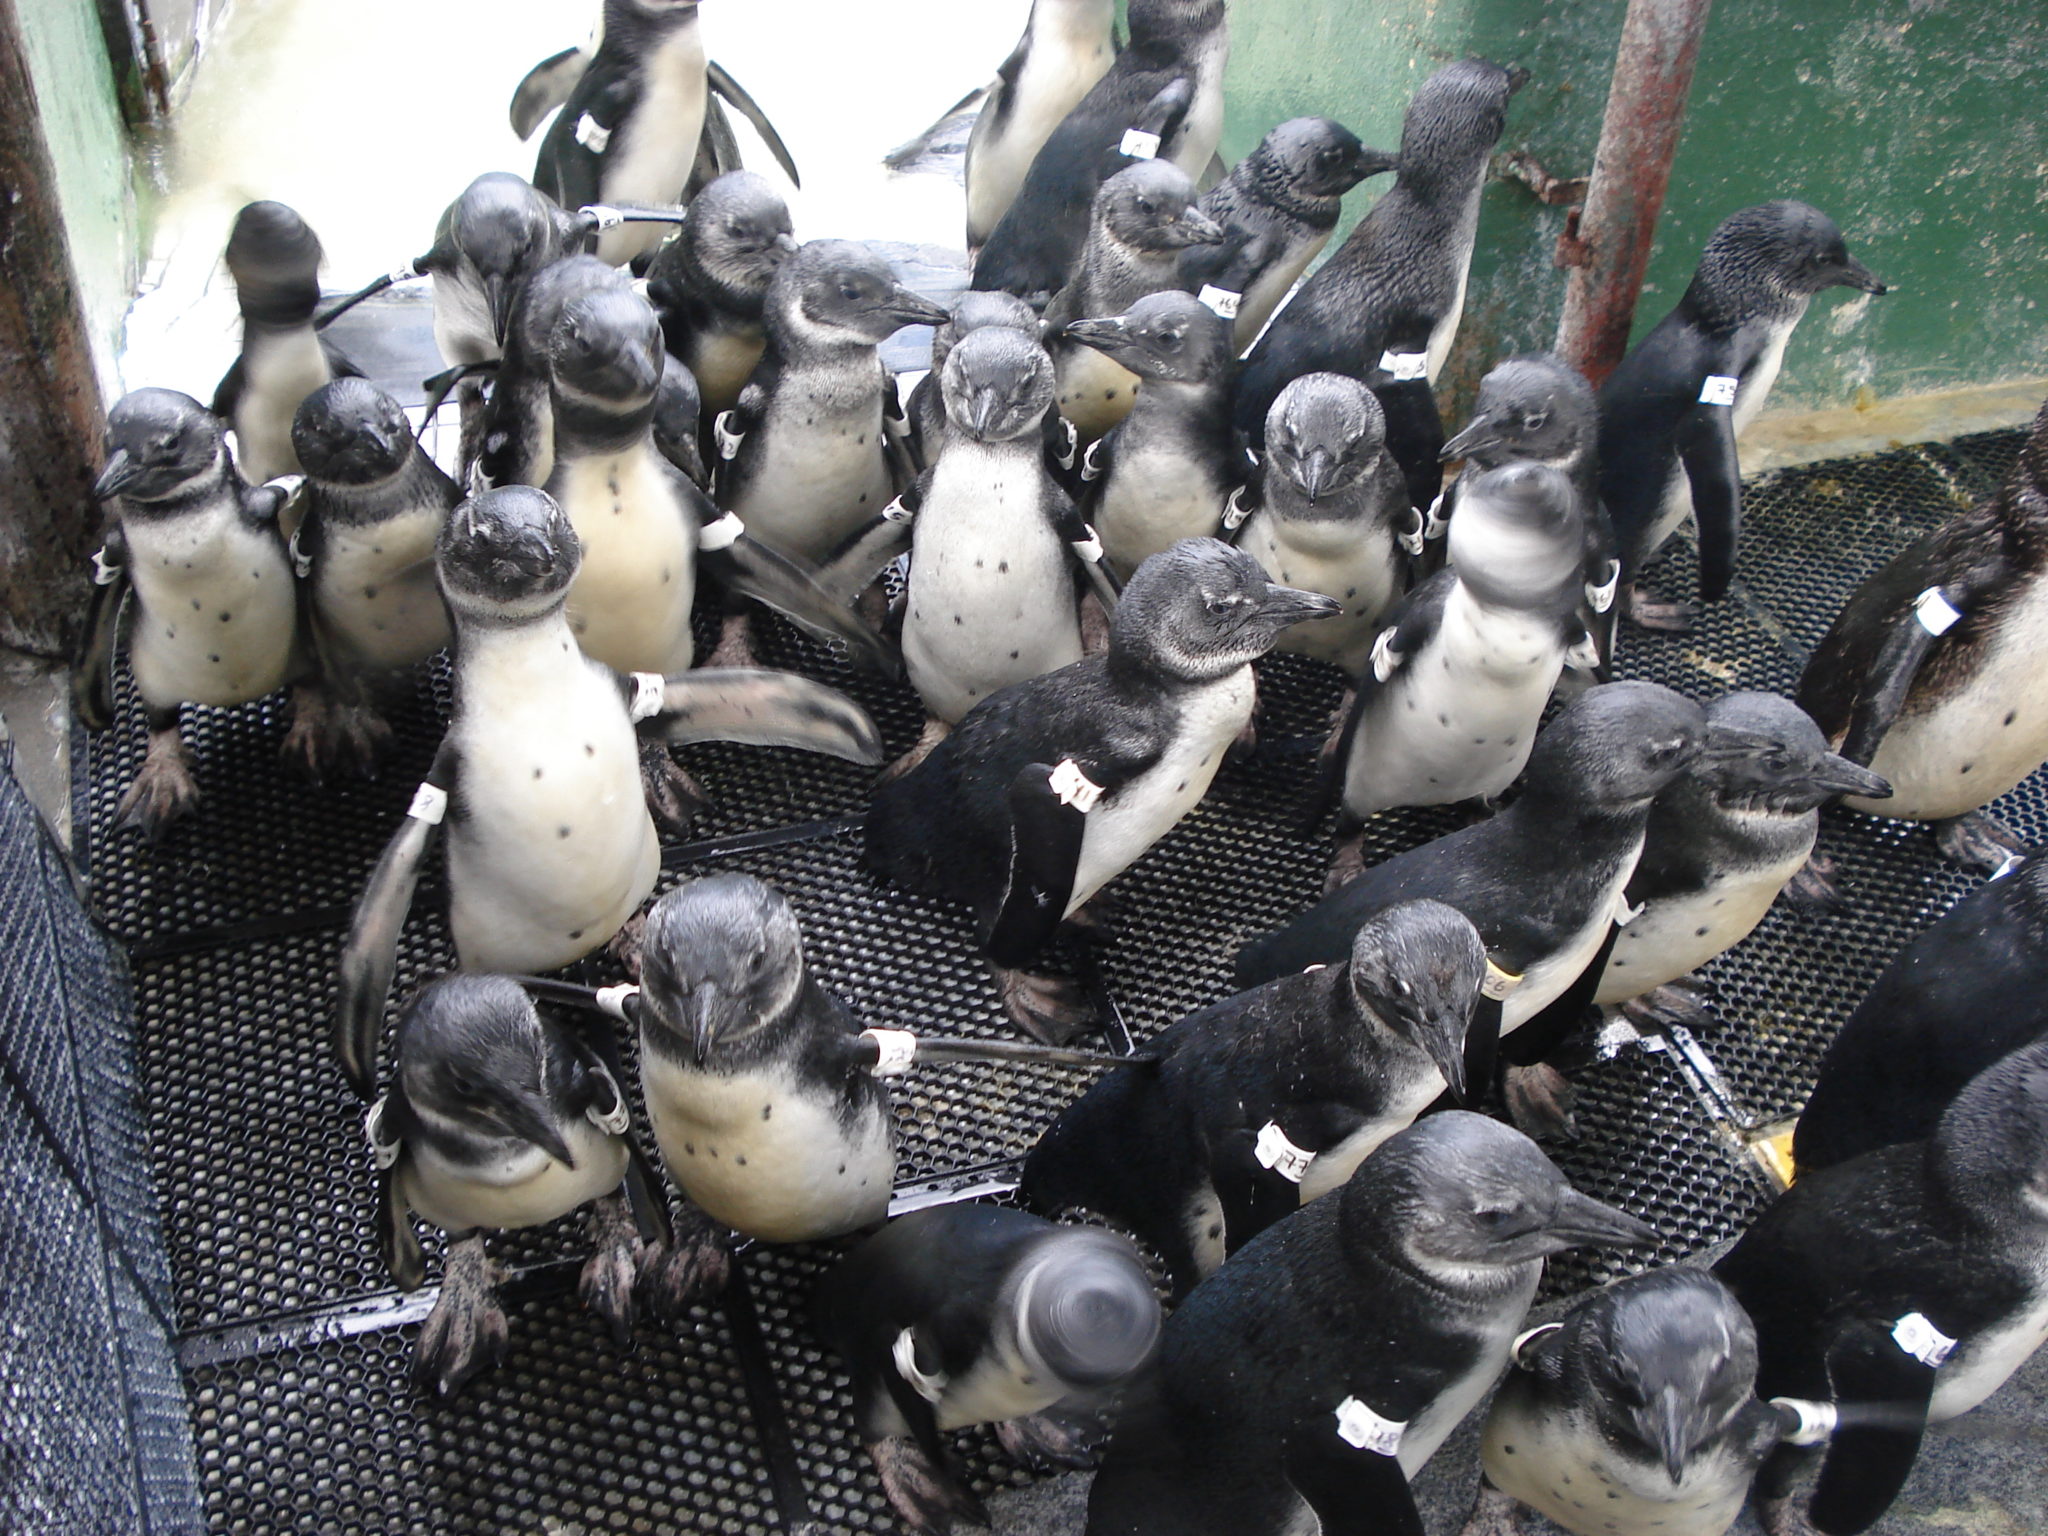 Penguins at Jenkinson's Aquarium Conservation